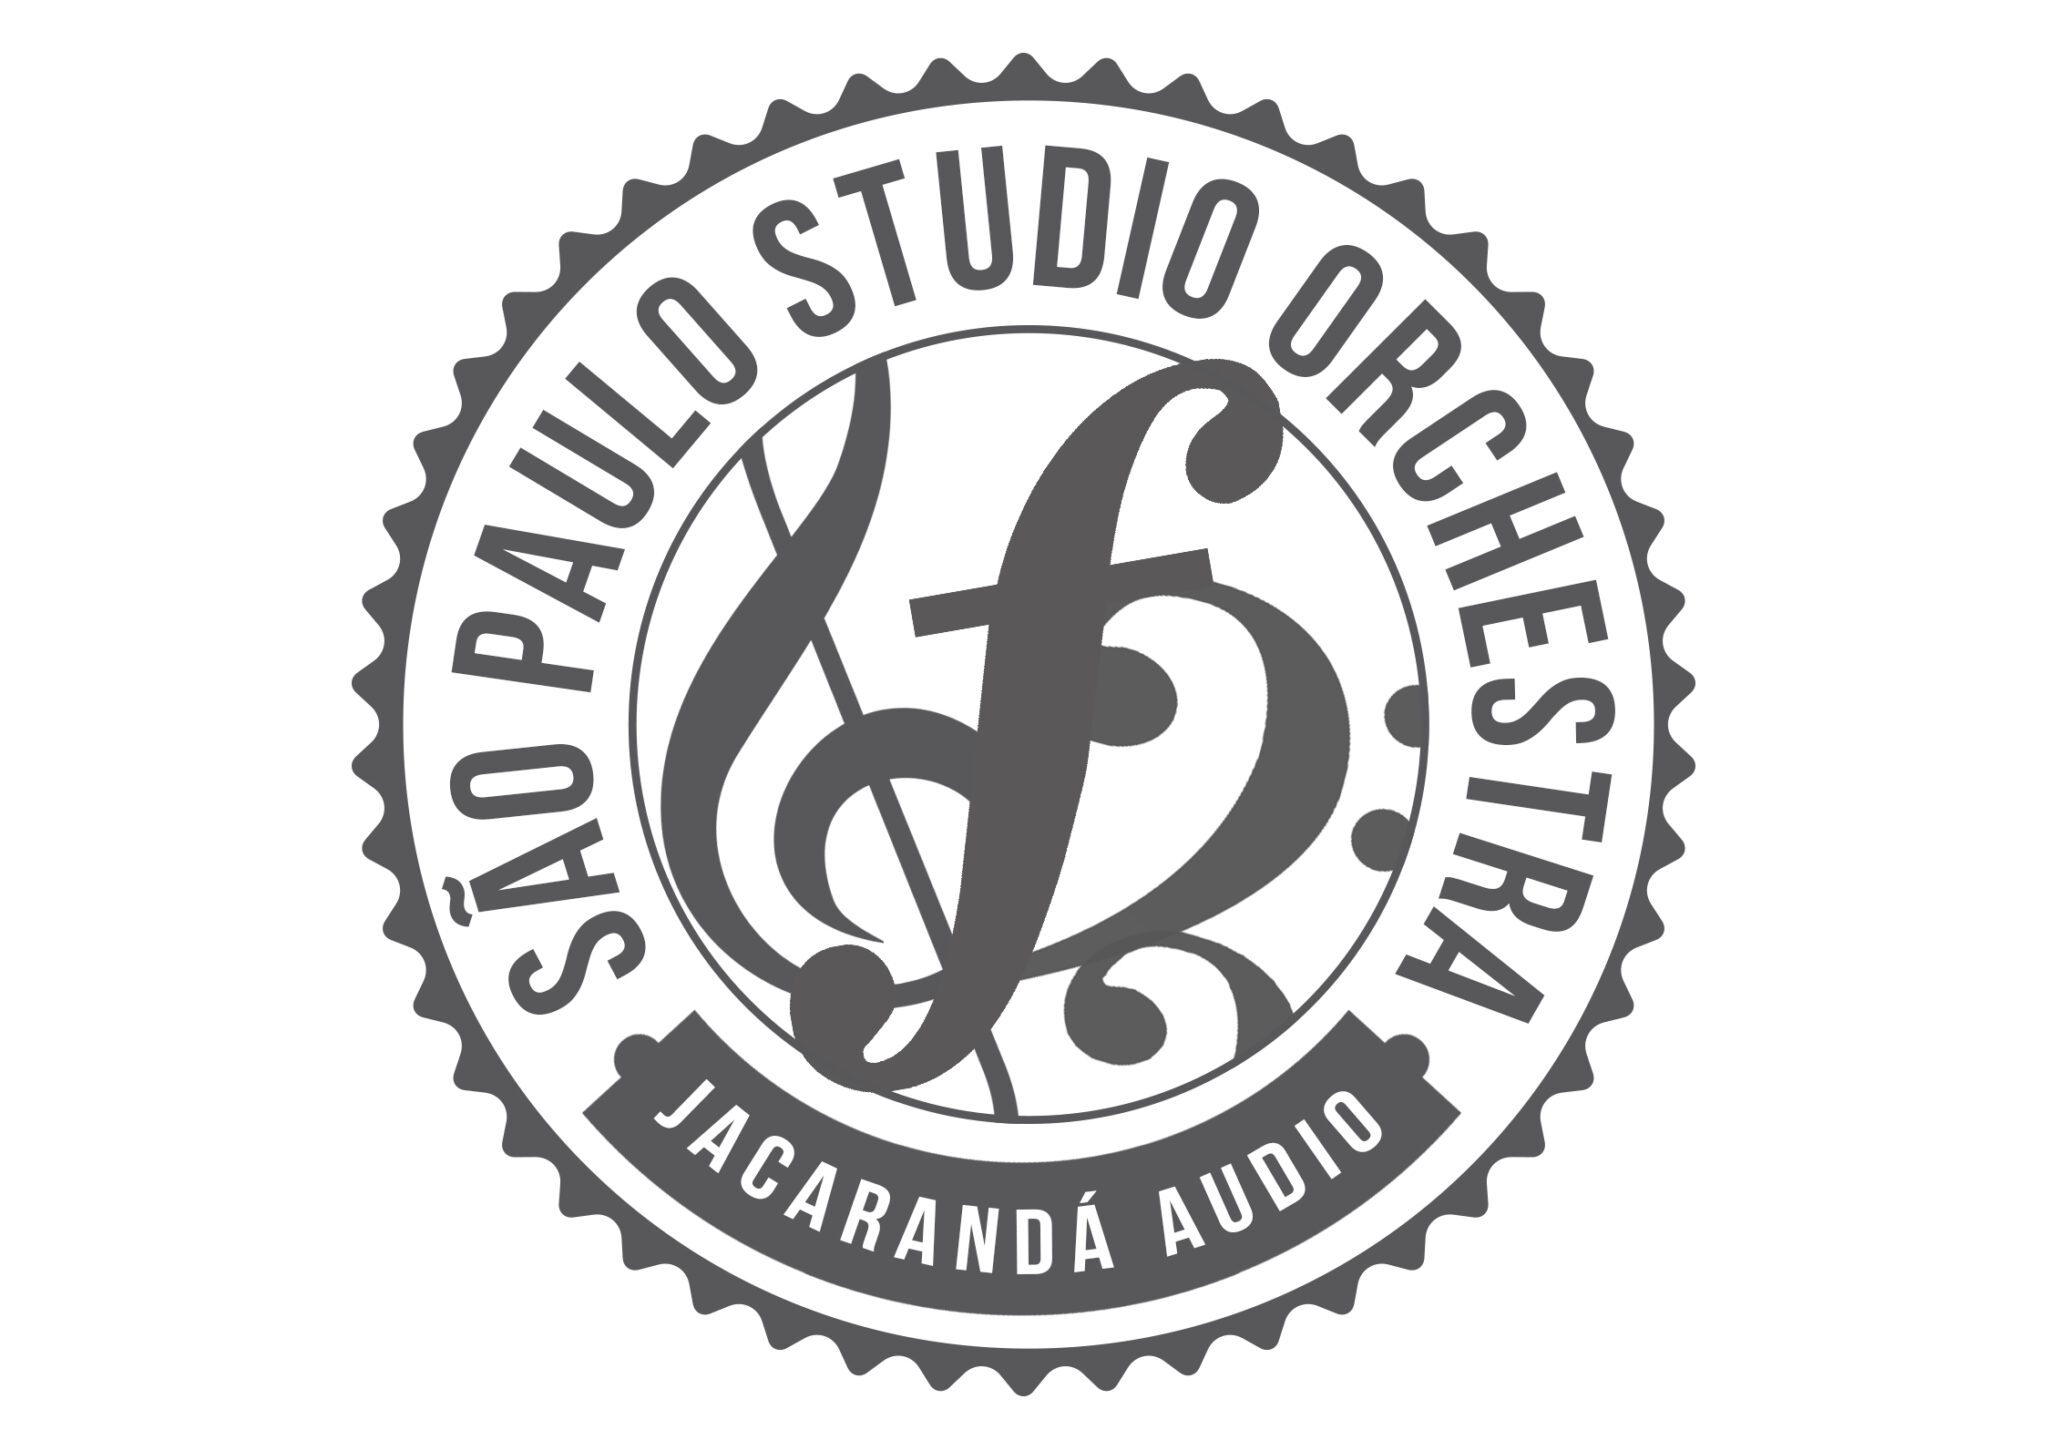 Orquestra-de-estudio-SPSO-scaled